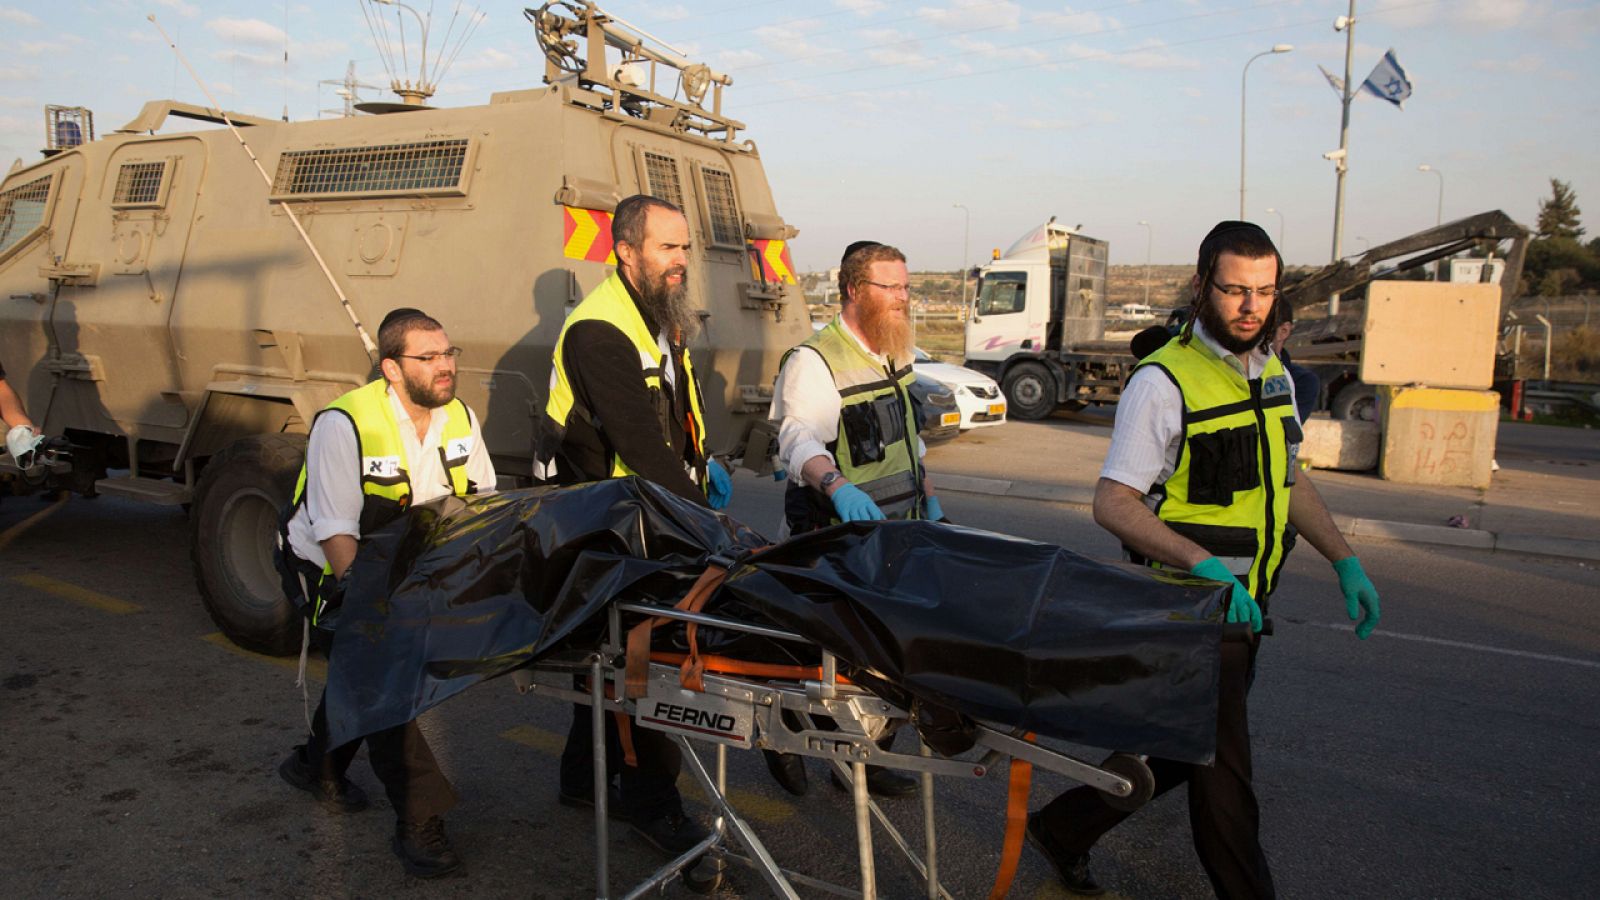 Voluntarios israelíes transportan el cuerpo de un palestino muerto tras apuñalar a una mujer israelí